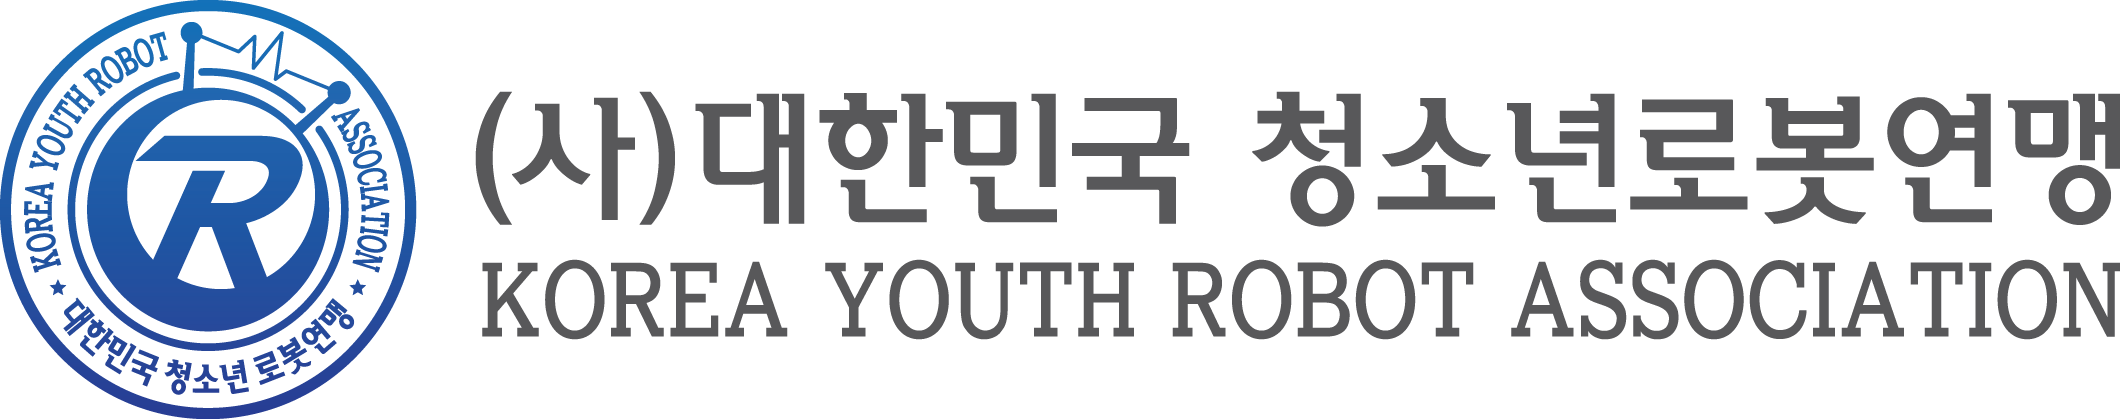 (사)대한민국 청소년 로봇연맹